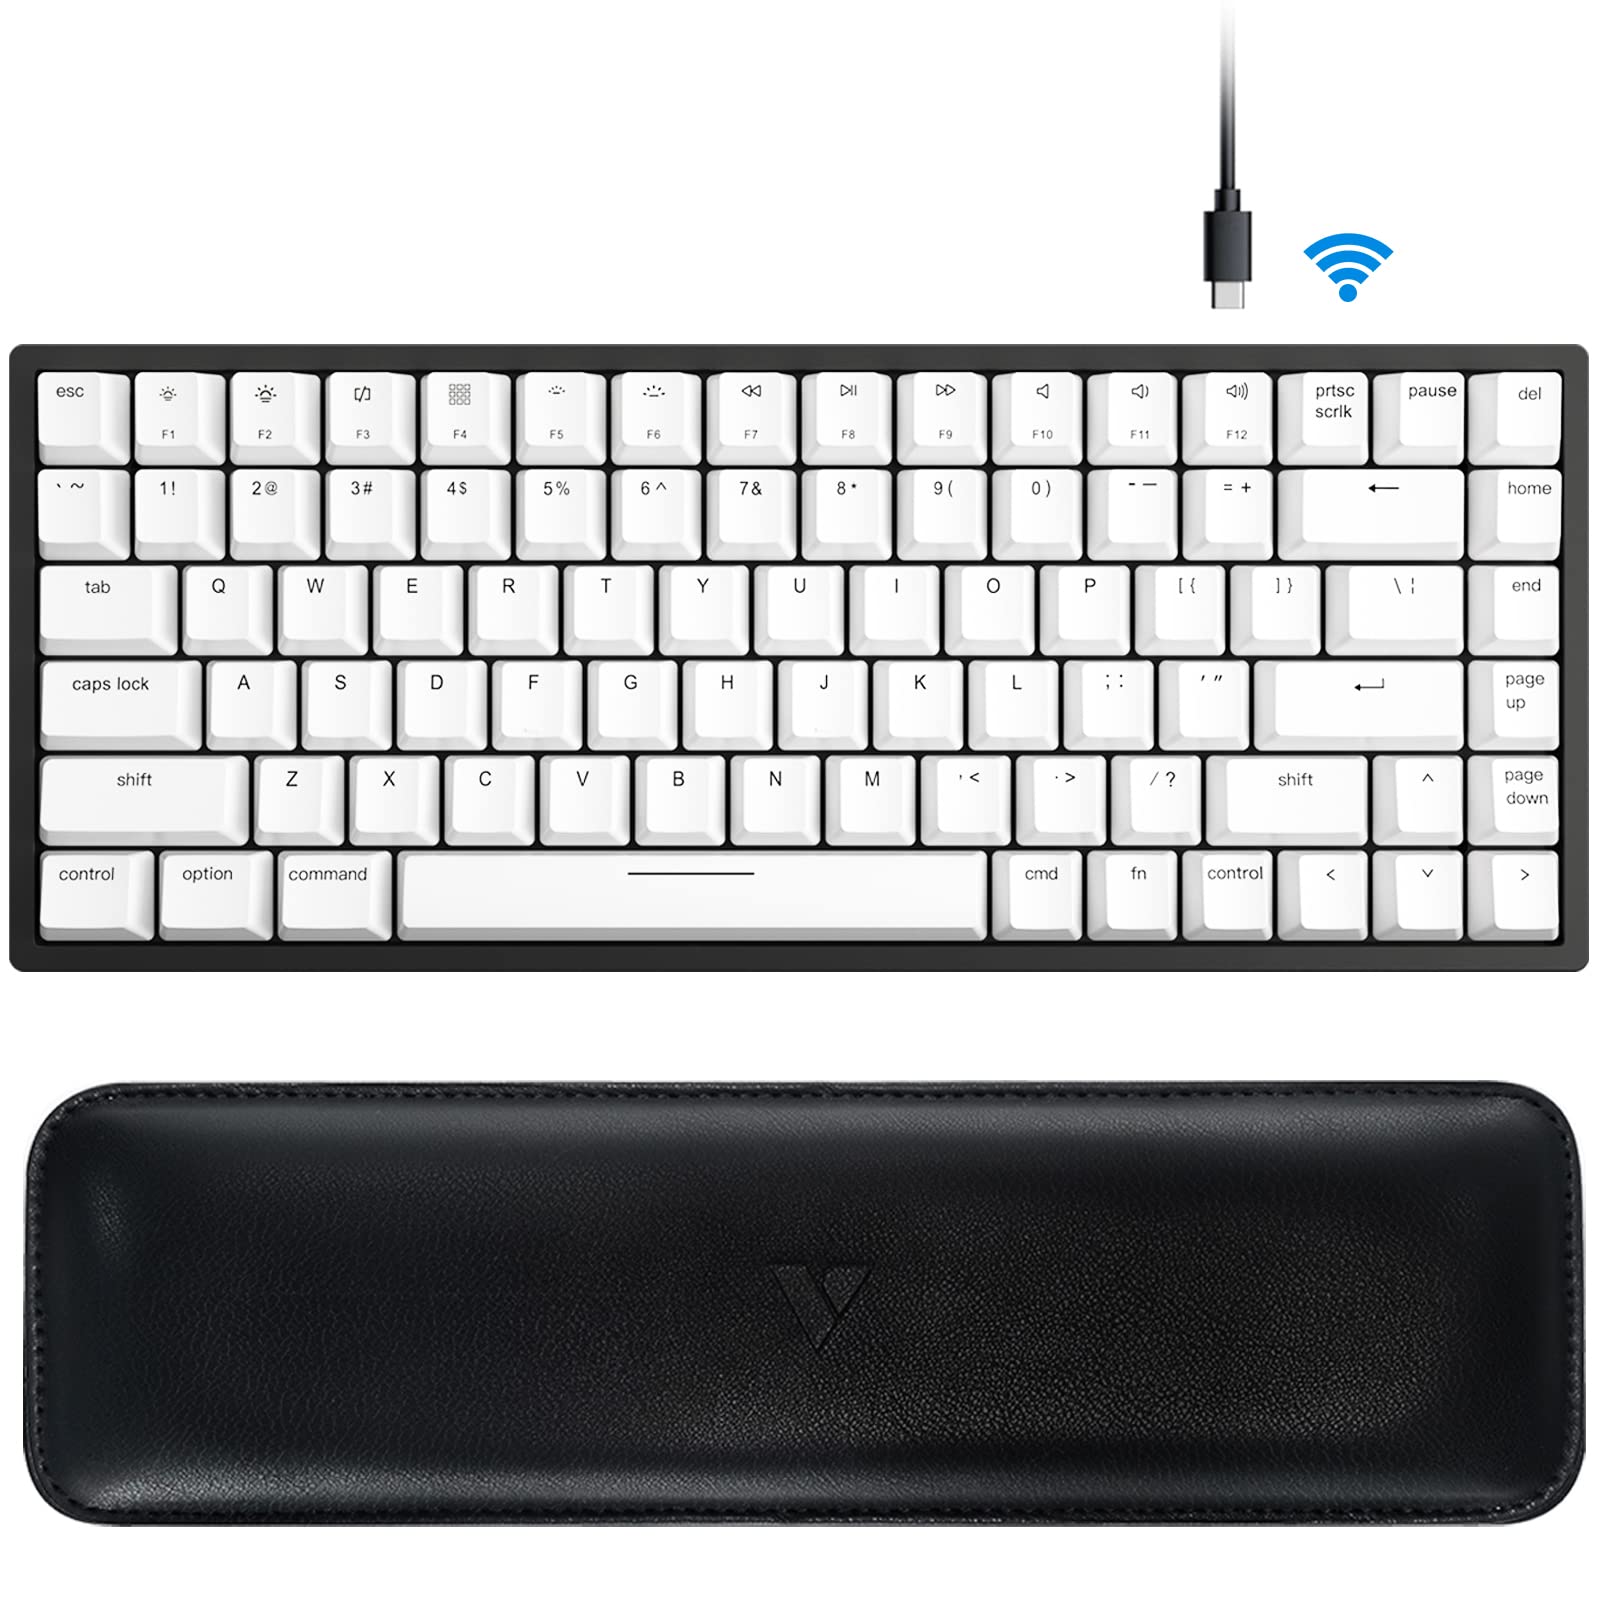 Bạn đang tìm kiếm một chiếc bàn phím cơ chất lượng và độc đáo? Vissles Mechanical Keyboard chính là sự lựa chọn sáng giá dành cho bạn! Hãy xem hình ảnh liên quan để khám phá vẻ đẹp và sức mạnh của bàn phím này!